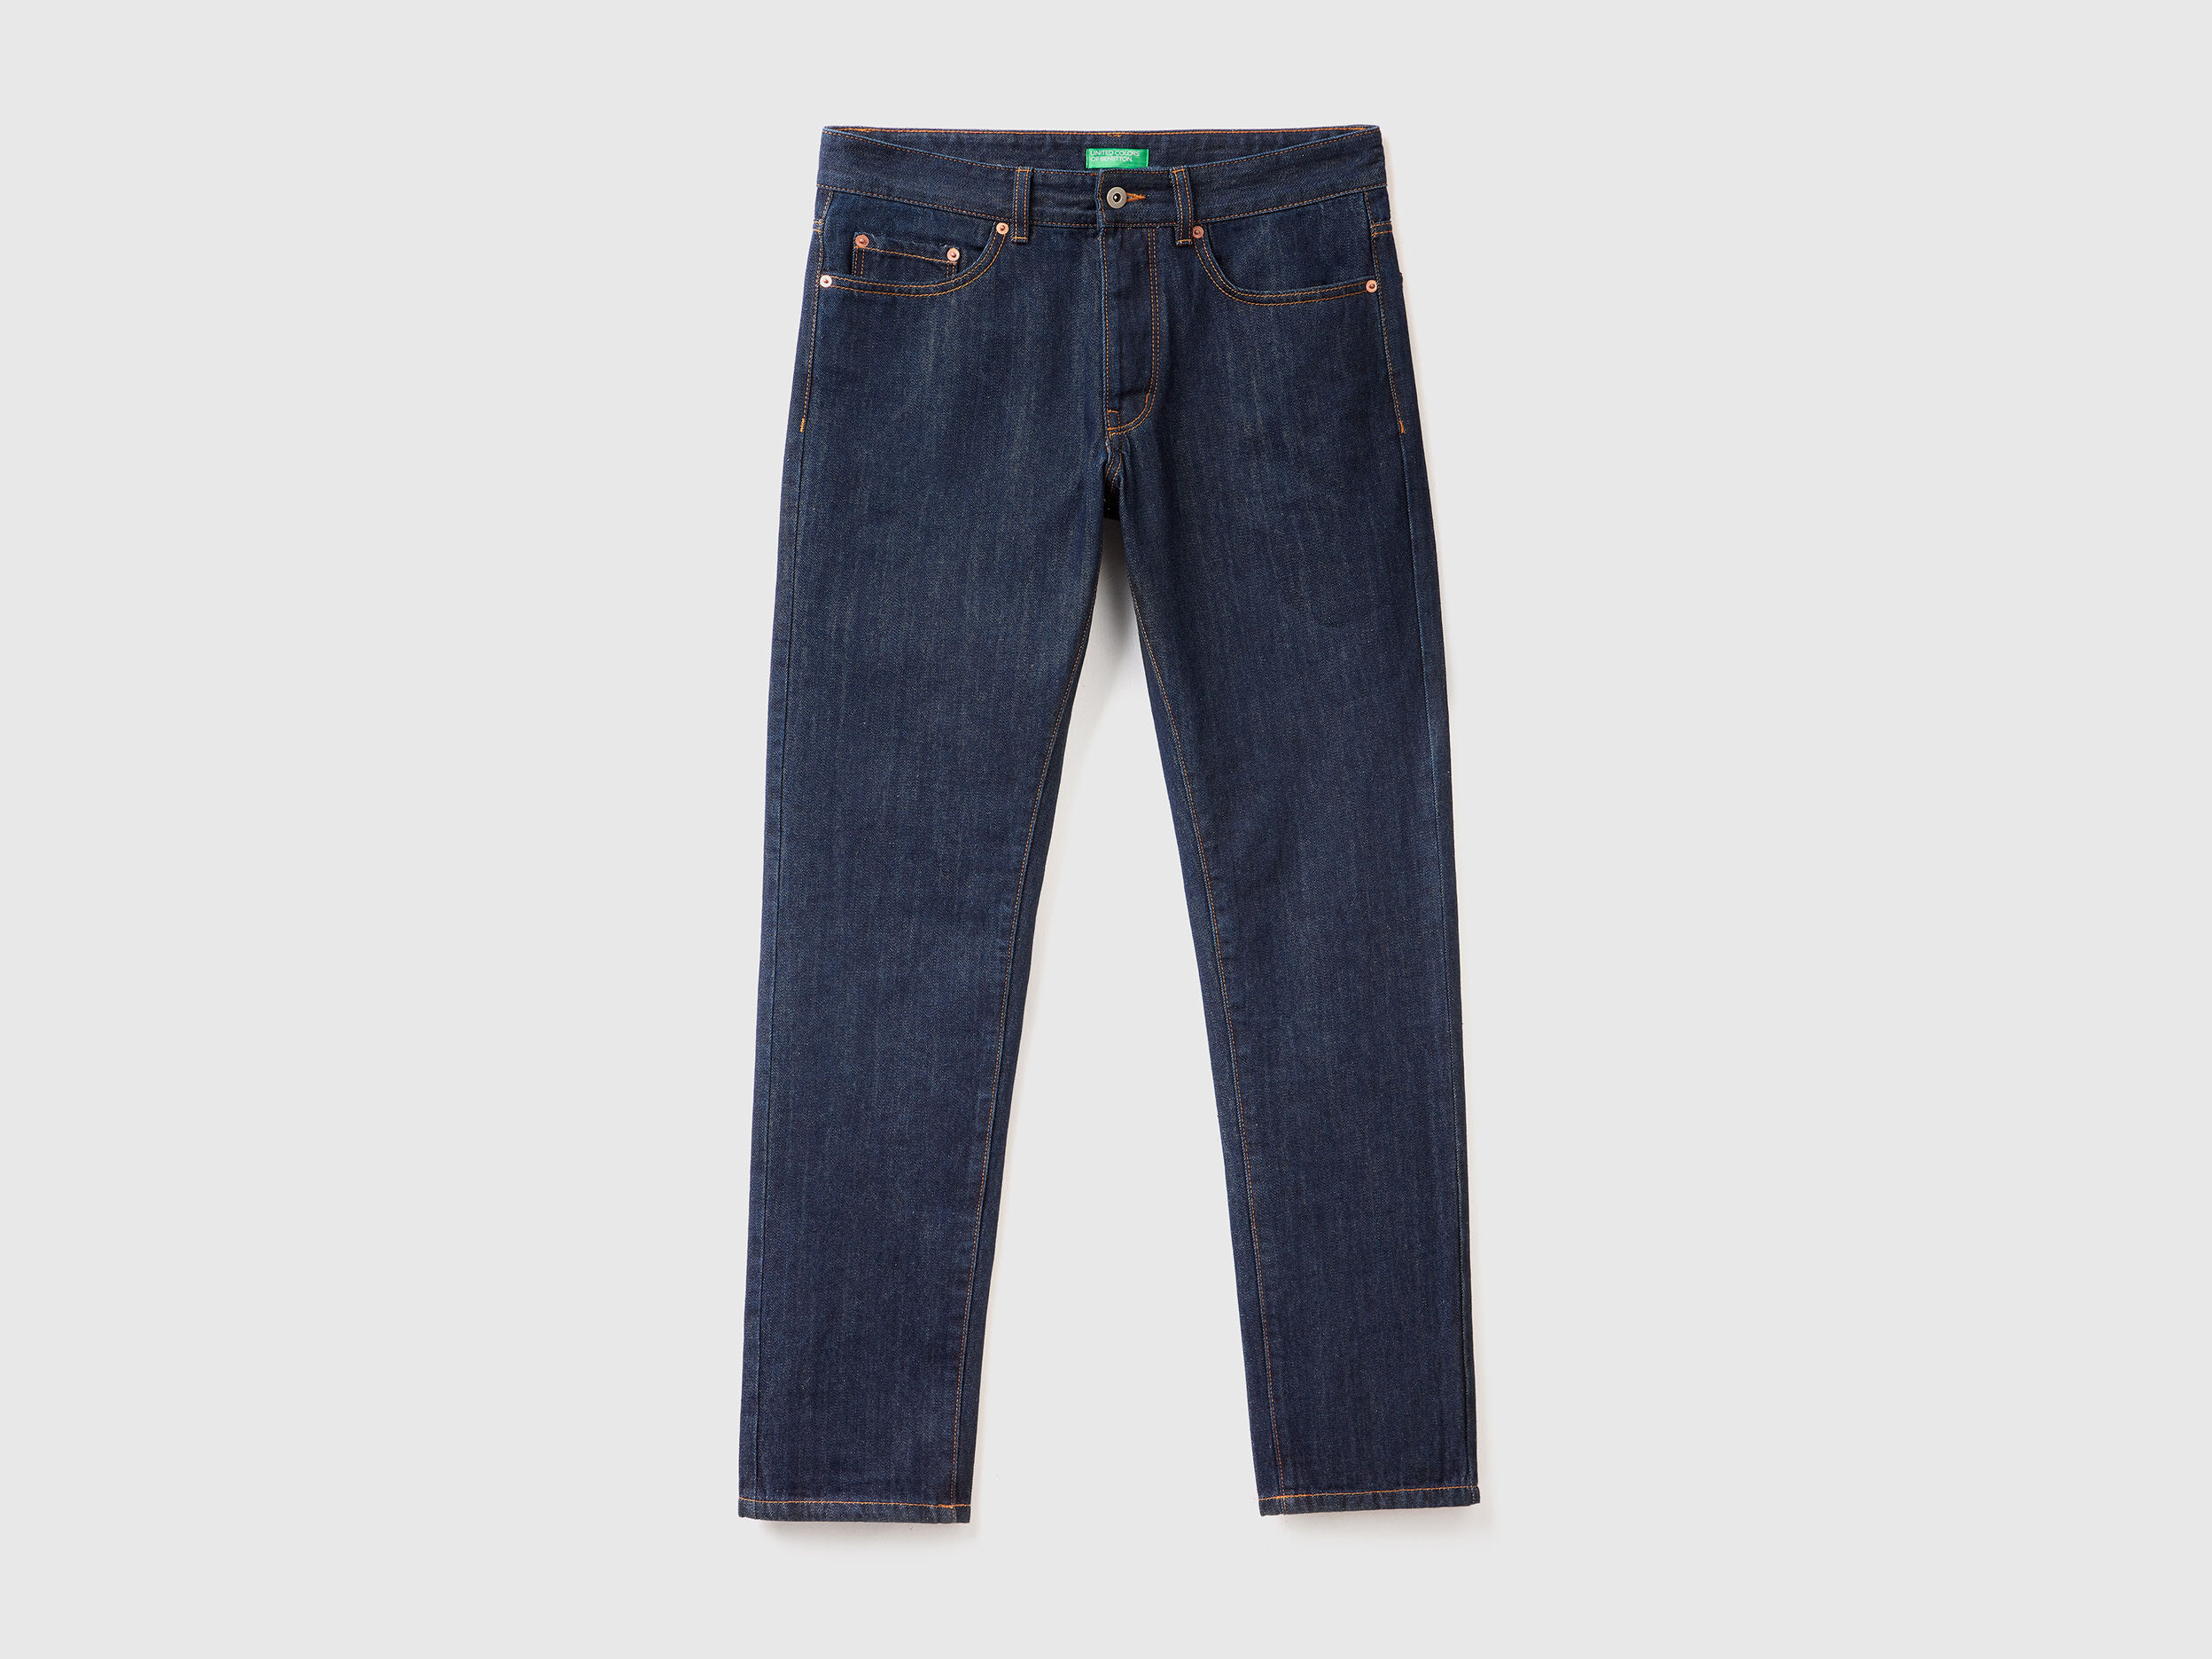 FR Durable Modern Jeans | 46-60 Waist | 13oz. 100% Cotton Denim –  www.lapco.com